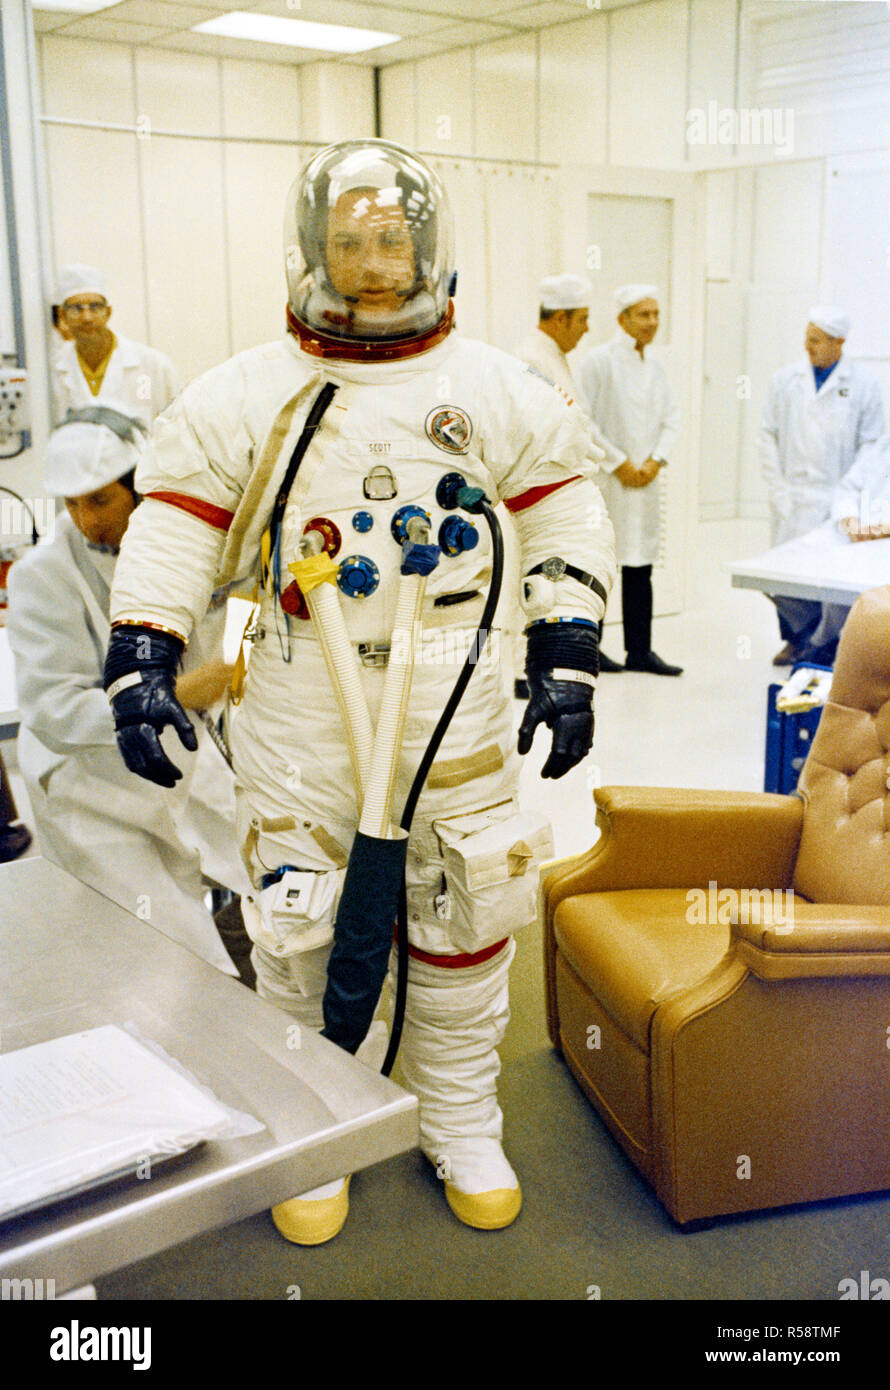 (26 Juli 1971) - - - Astronaut David R. Scott, Kommandant der Apollo 15 Mondlandung Mission geht durch passende Operationen Stockfoto